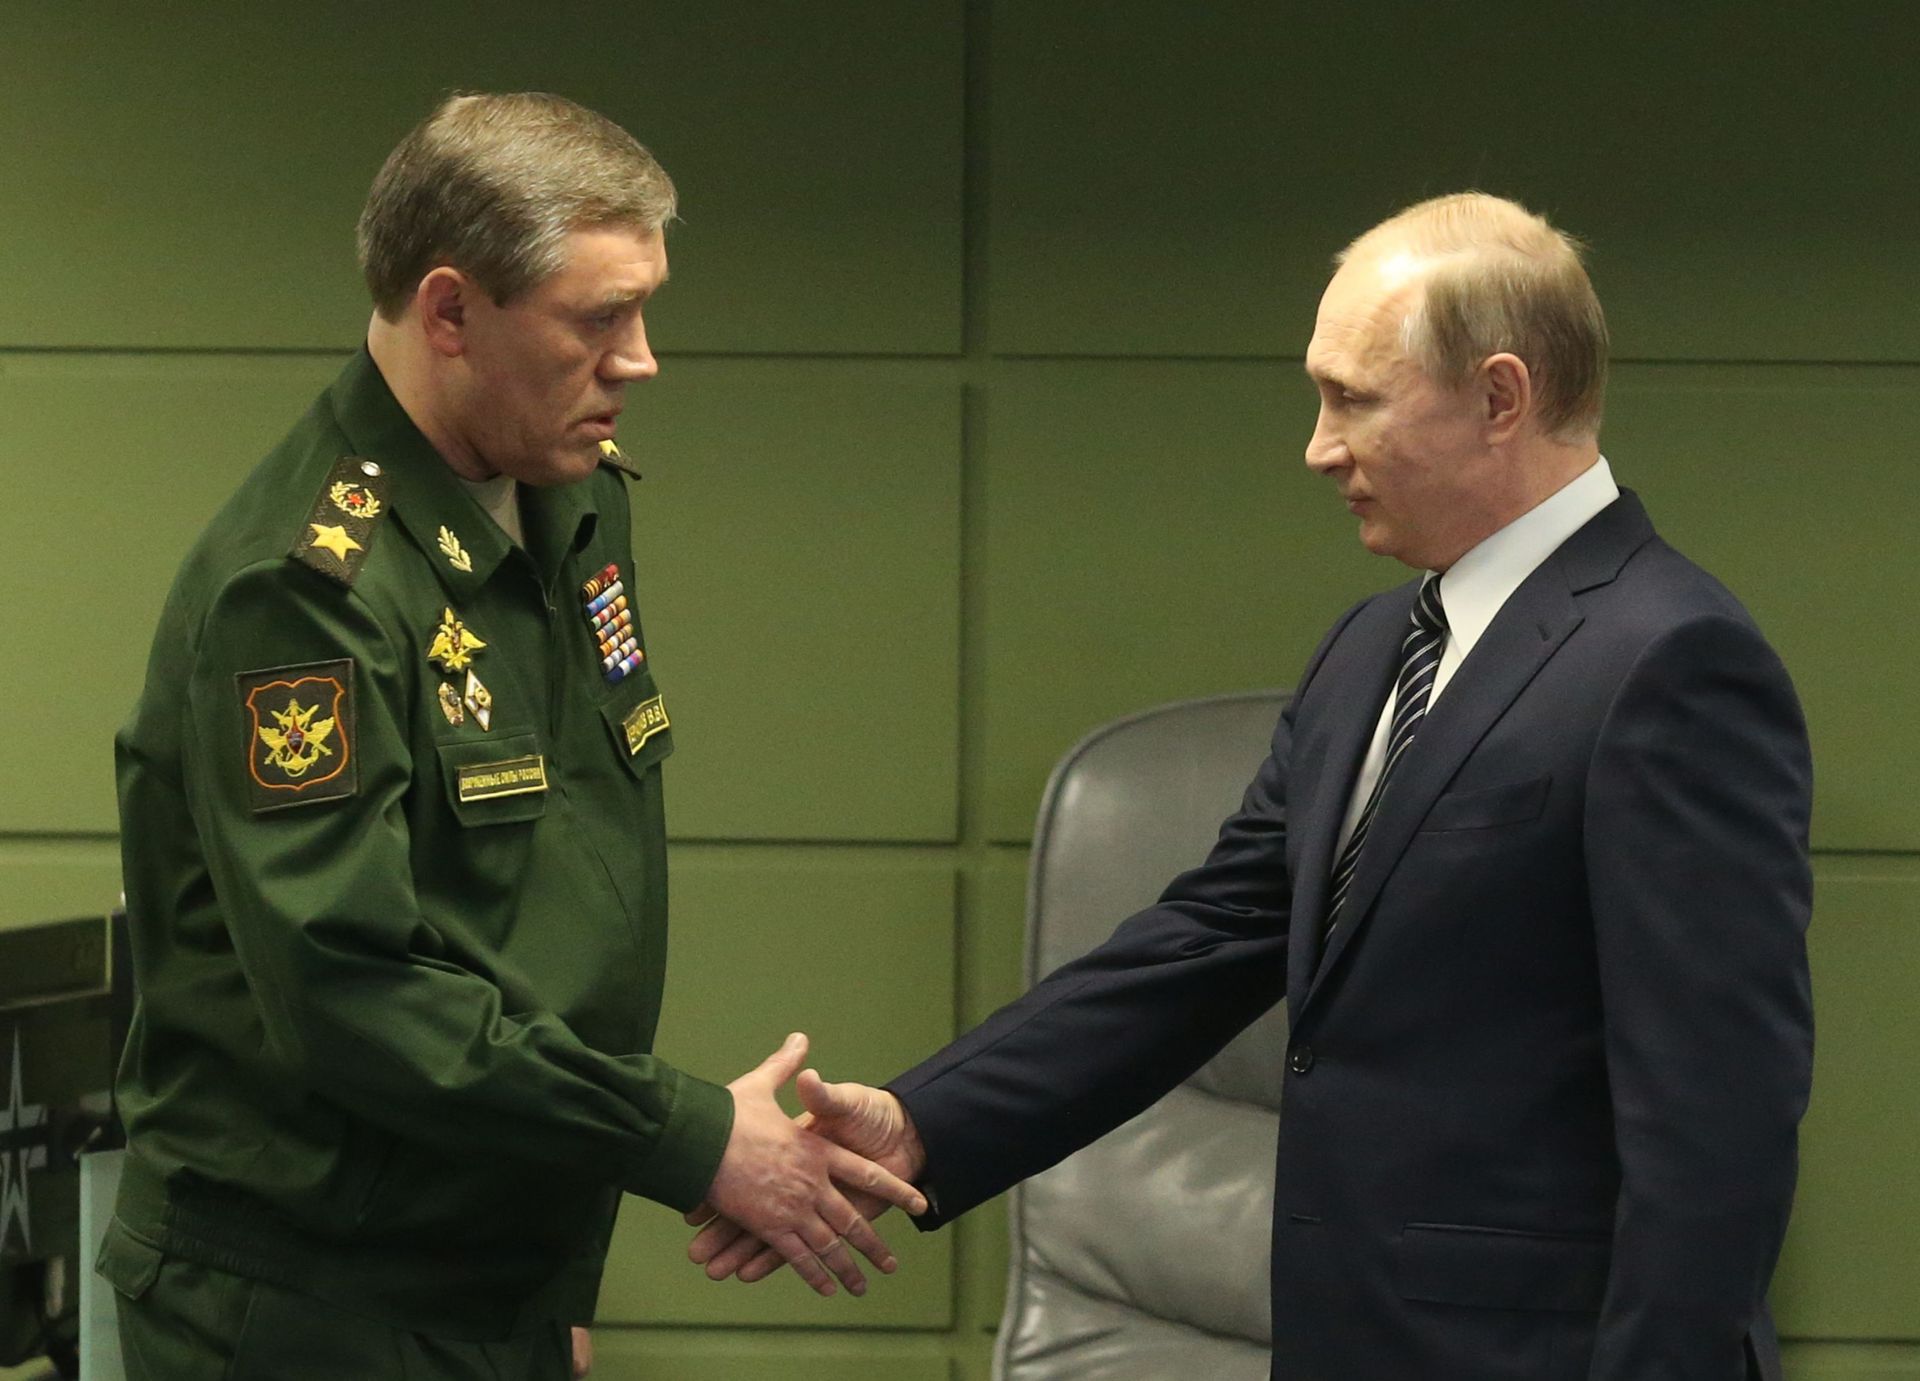 Le président russe Vladimir Poutine (R) salue le chef d’état-major général des forces armées Valery Gerasimov (L) lors de la visite du Centre de défense nationale à Moscou, en Russie, le 11 mars 2016.